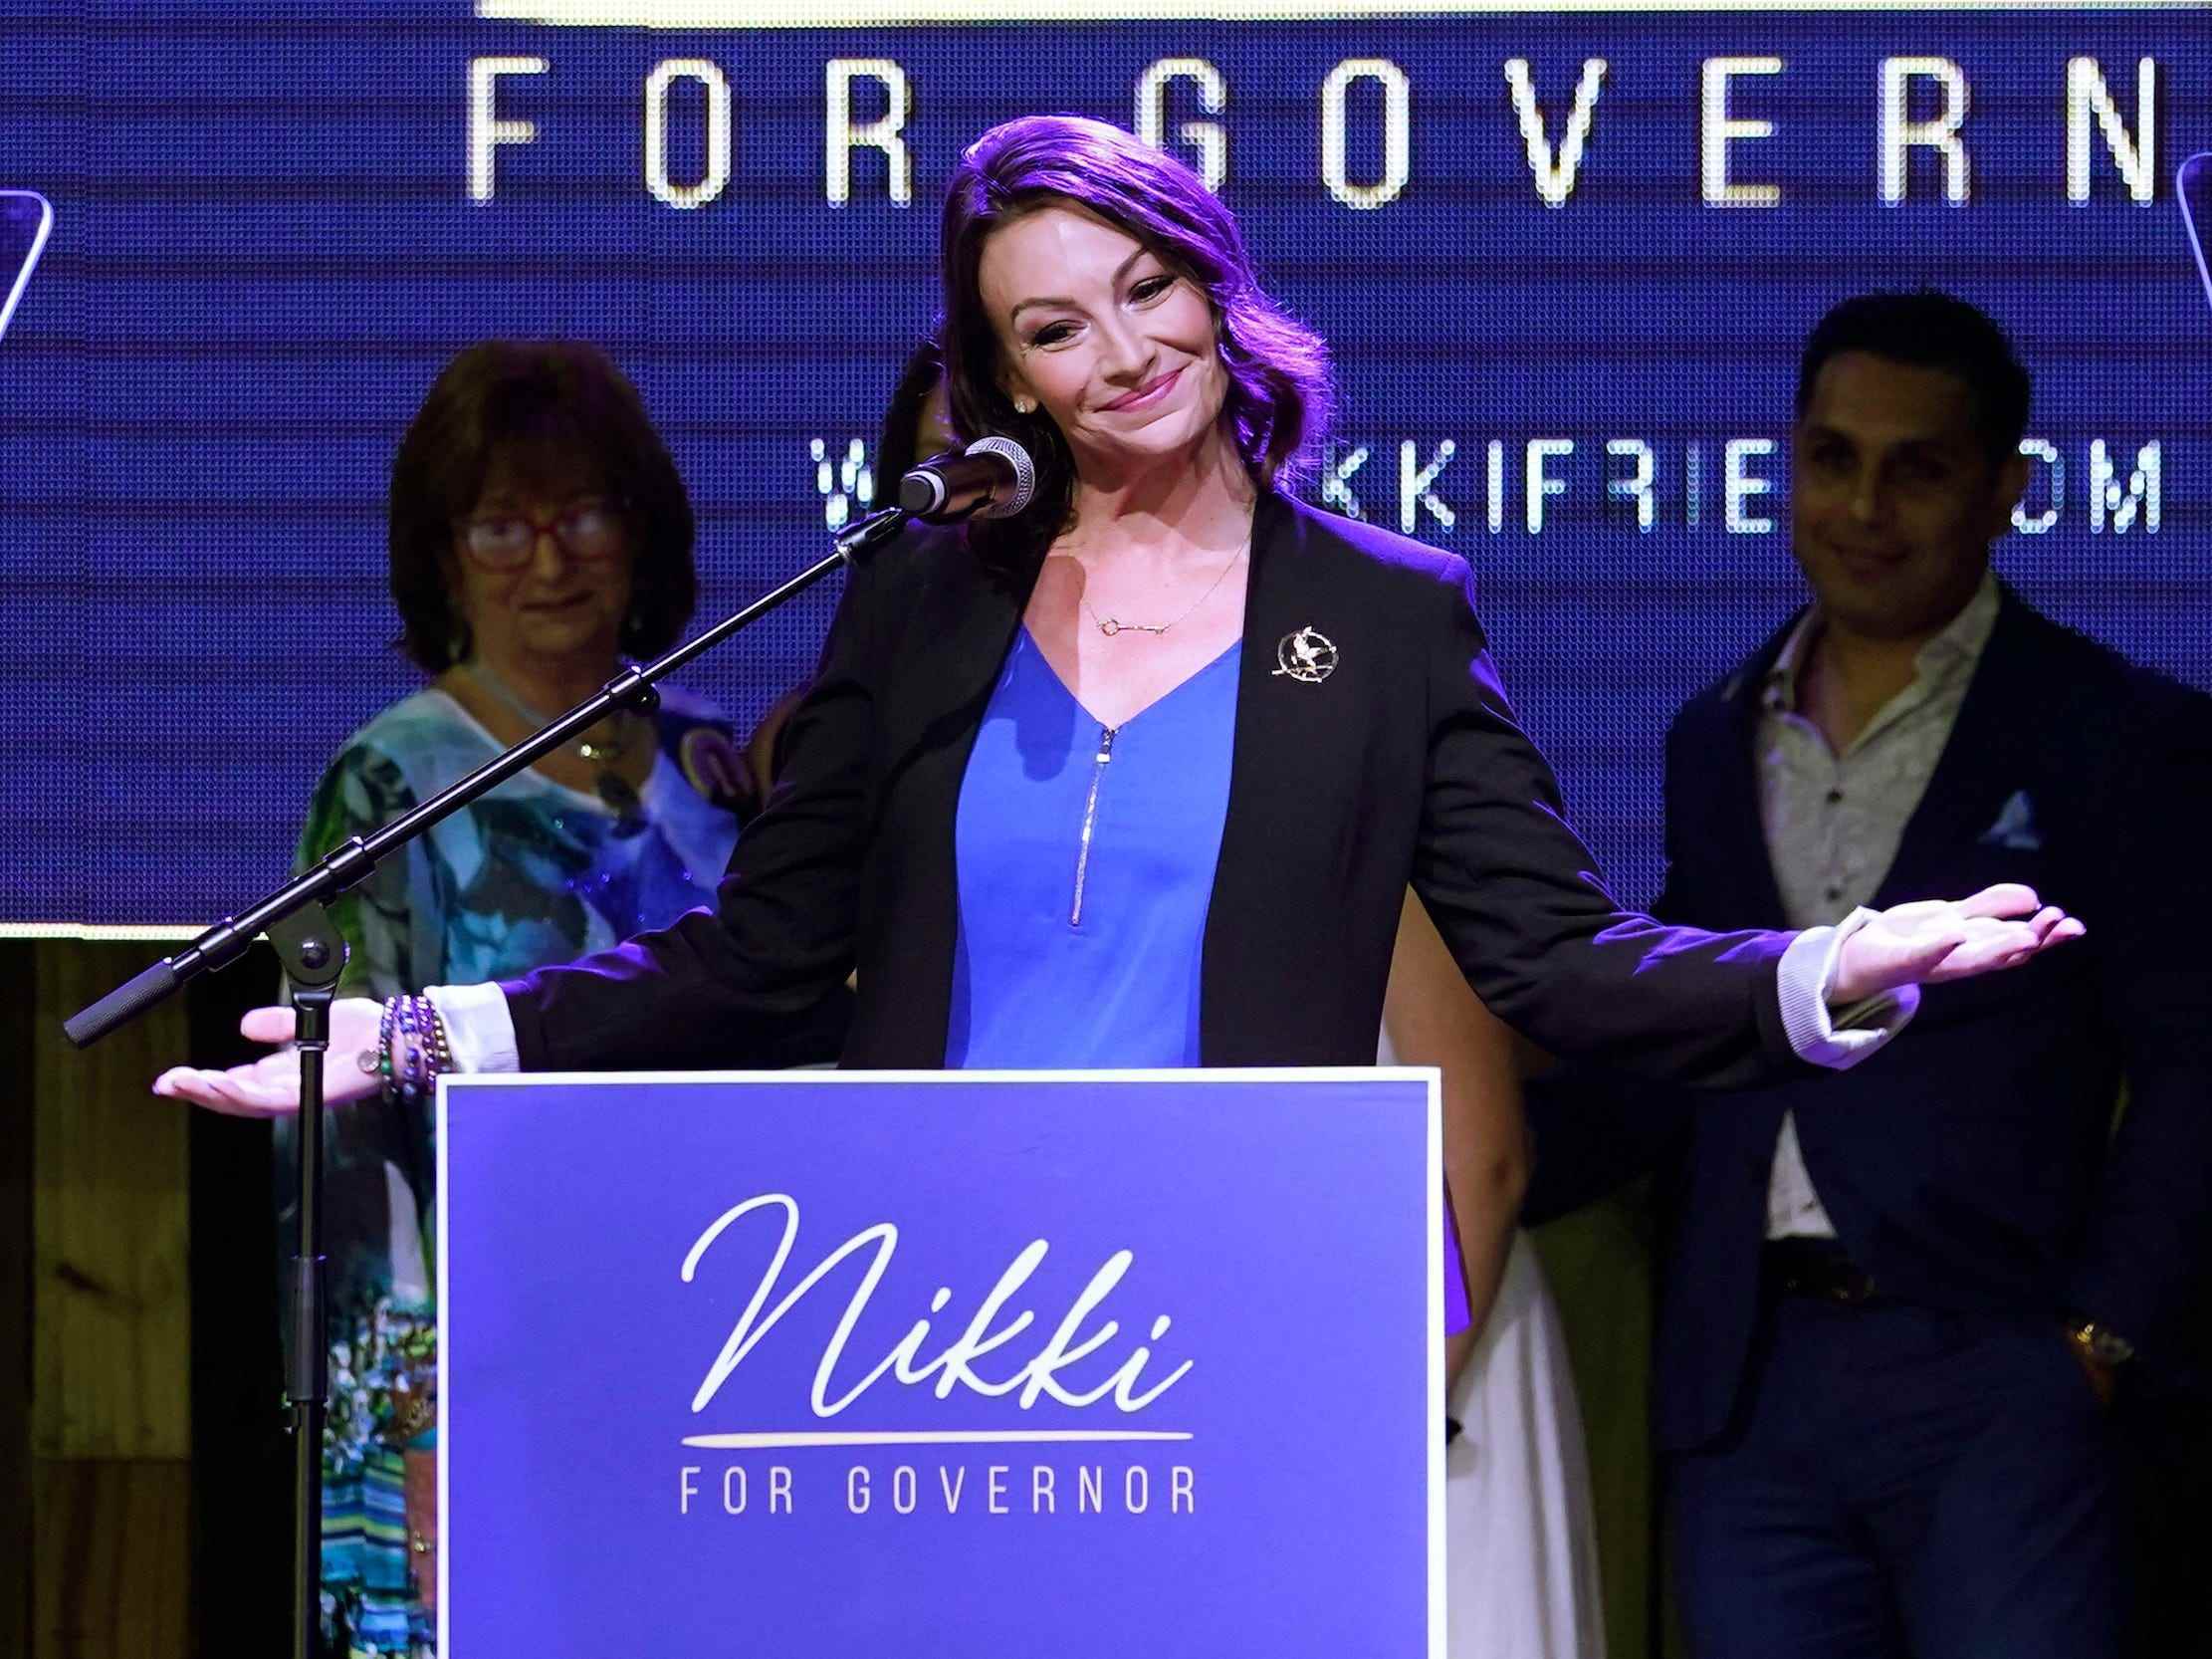 Die demokratische Gouverneurskandidatin Nikki Fried gestikuliert, nachdem sie am Dienstag, den 23. August 2022, in Fort Lauderdale, Florida, das Rennen gegen Rep. Charlie Crist kassiert hat.